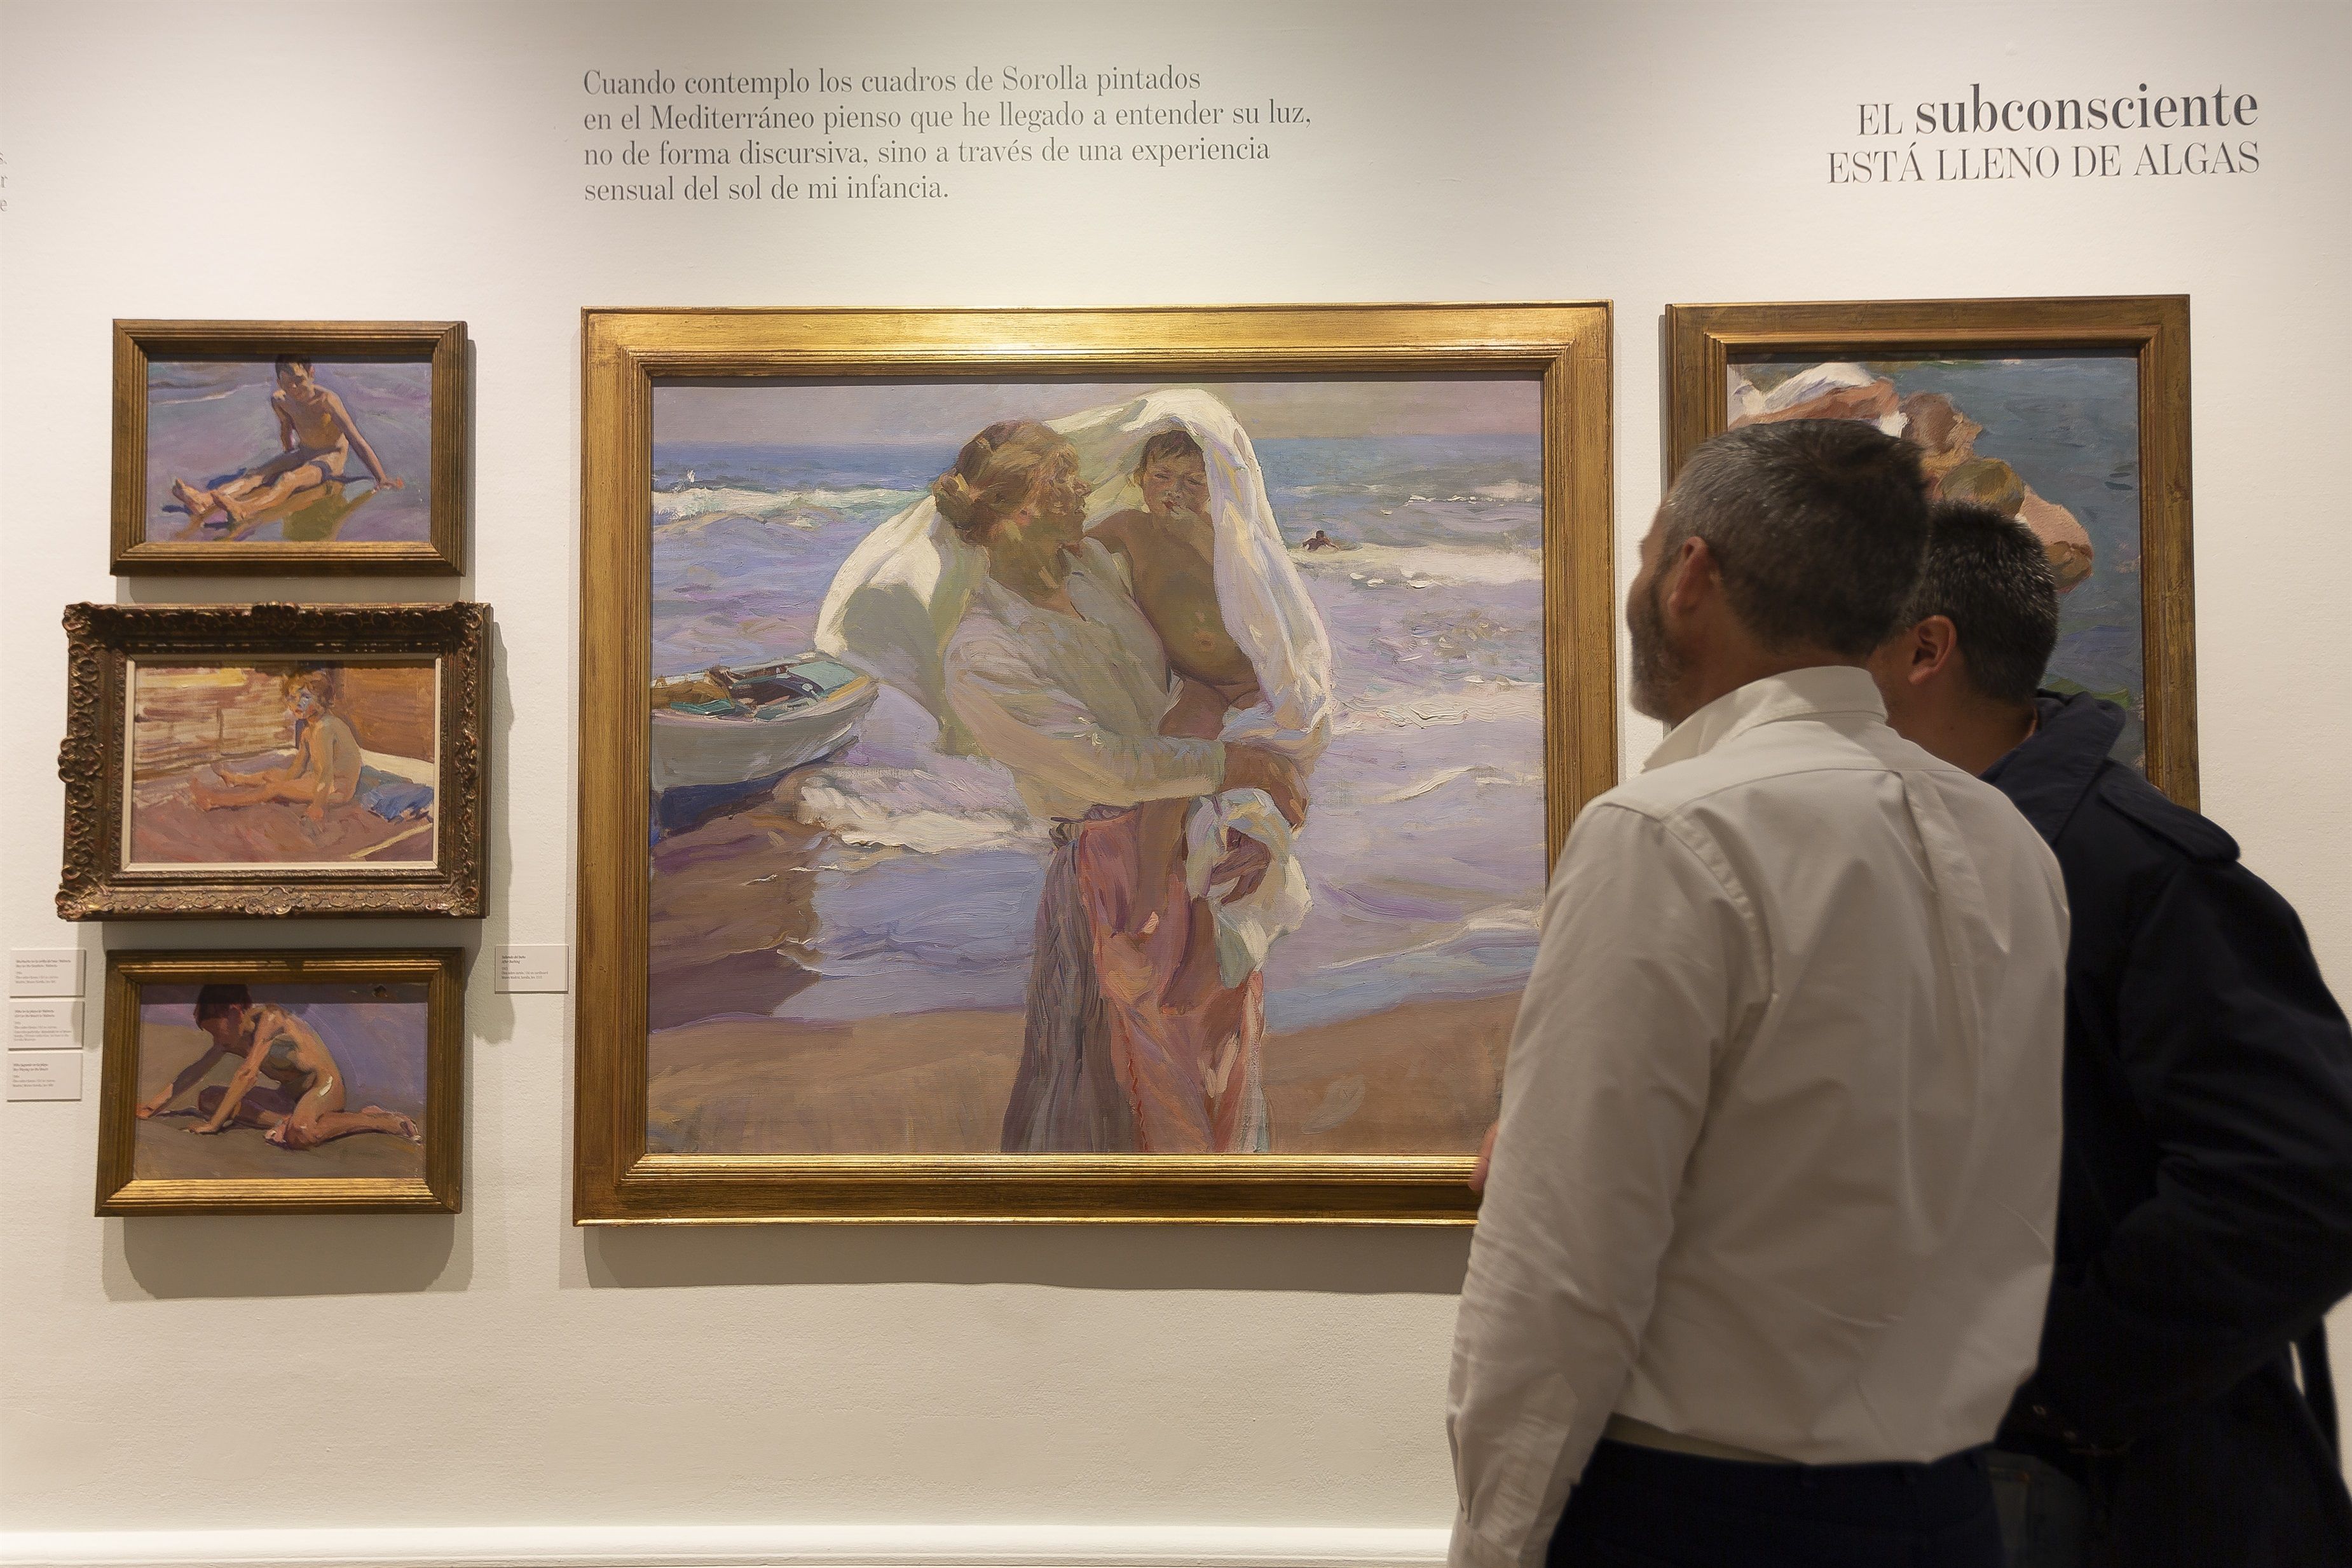 El escritor Manuel Vicent acerca la literatura a la pintura: "Poesía es bañarse en sus cuadros"